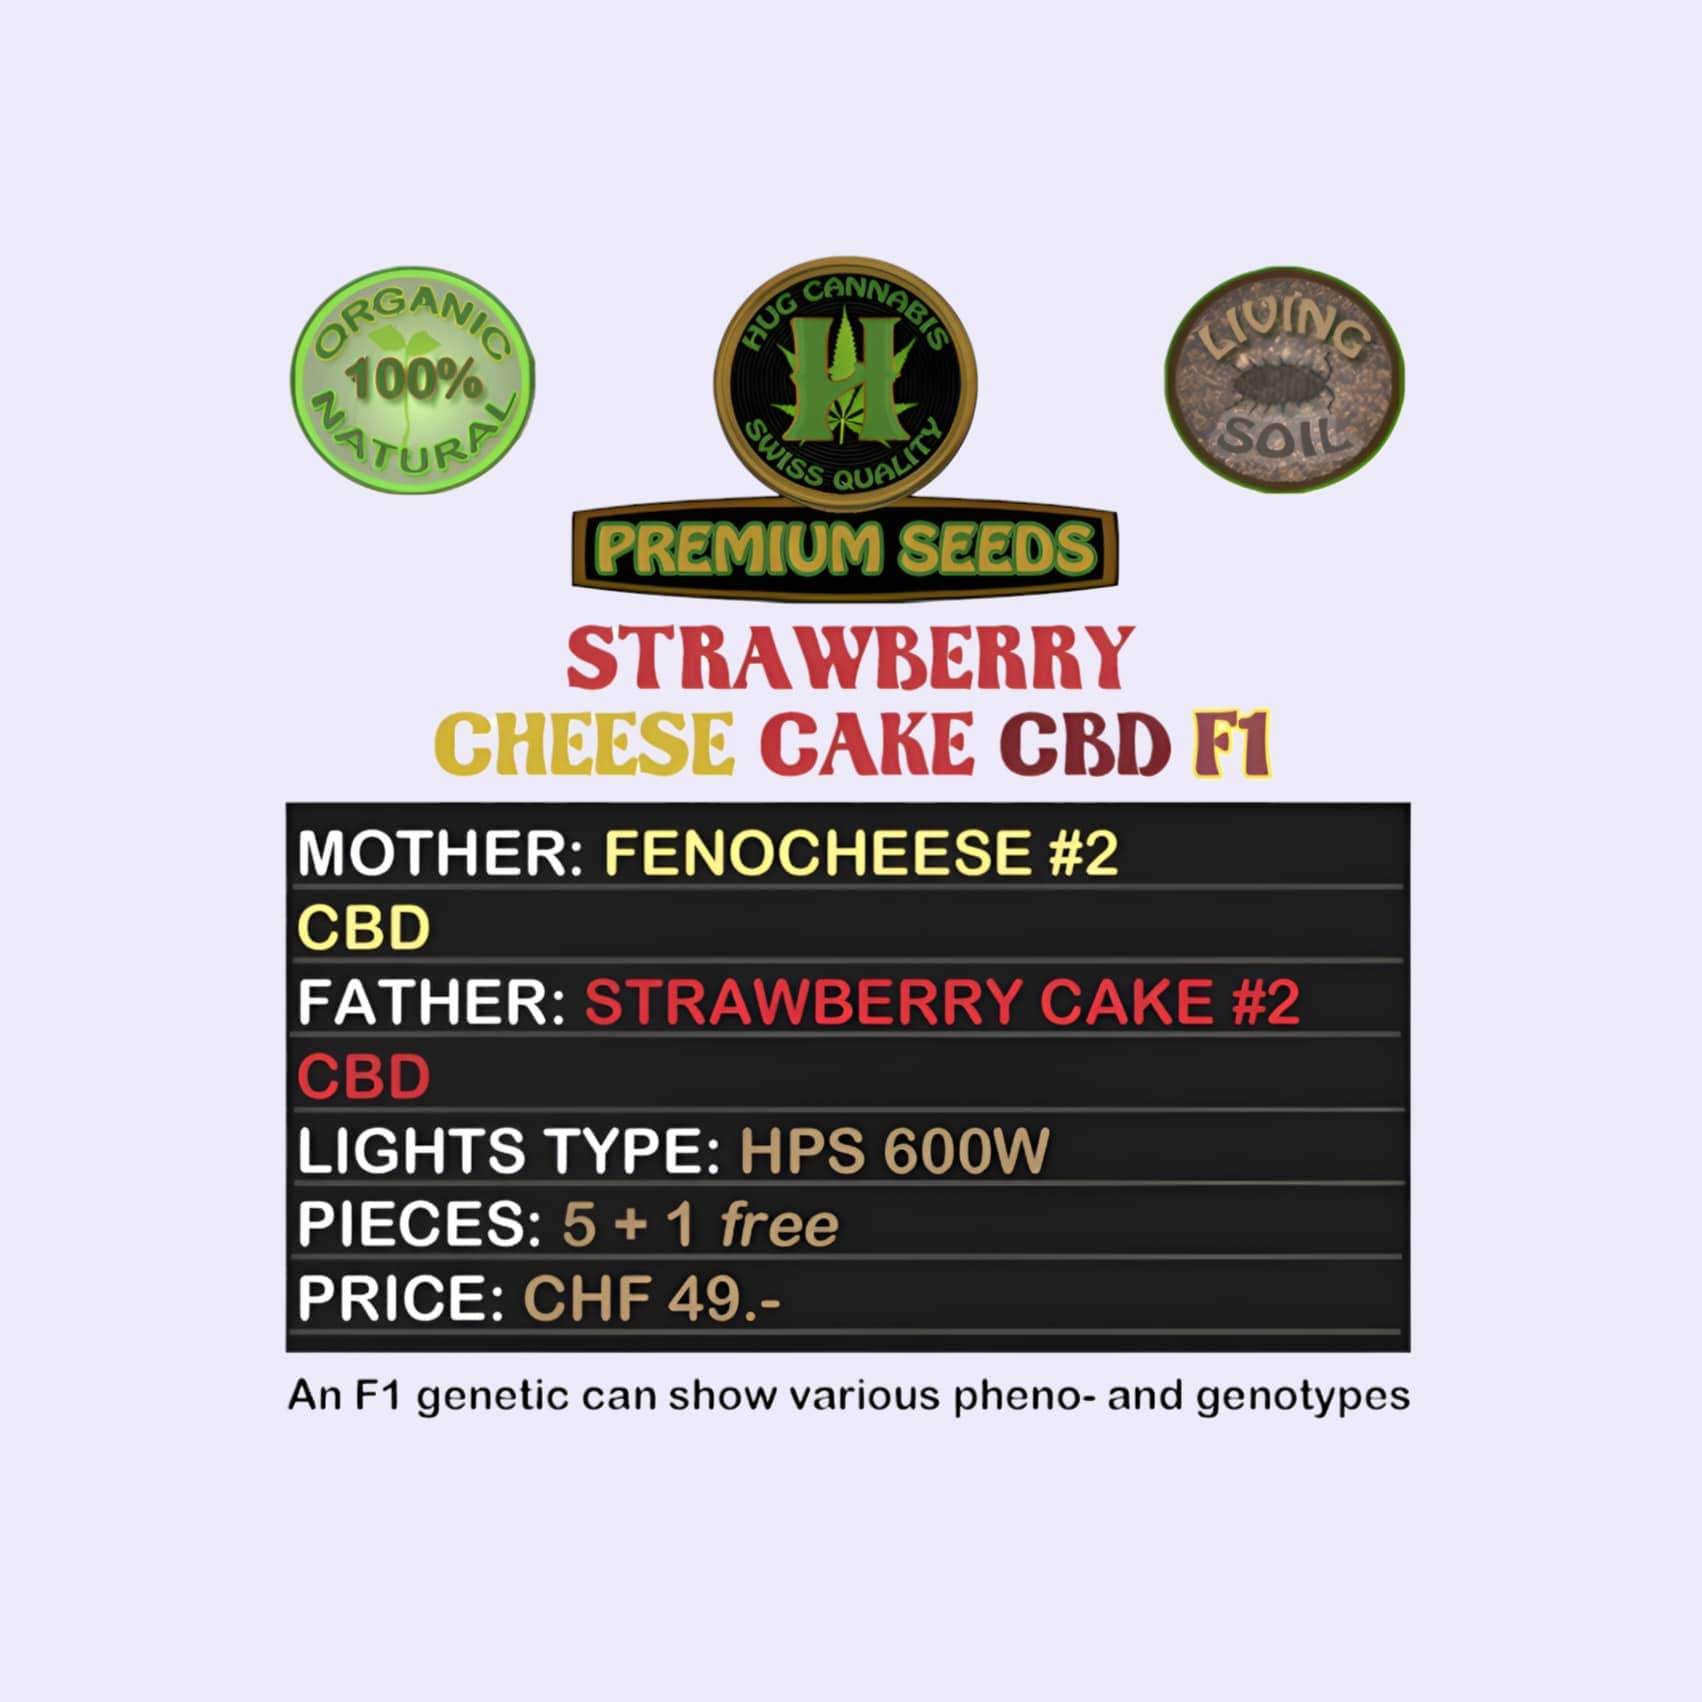 Dieses Bild zeigt die CBD Hanfsamen Strawberry Cheese Cake CBD F1 5 Seeds + 1 Free von der Firma Hug Cannabis